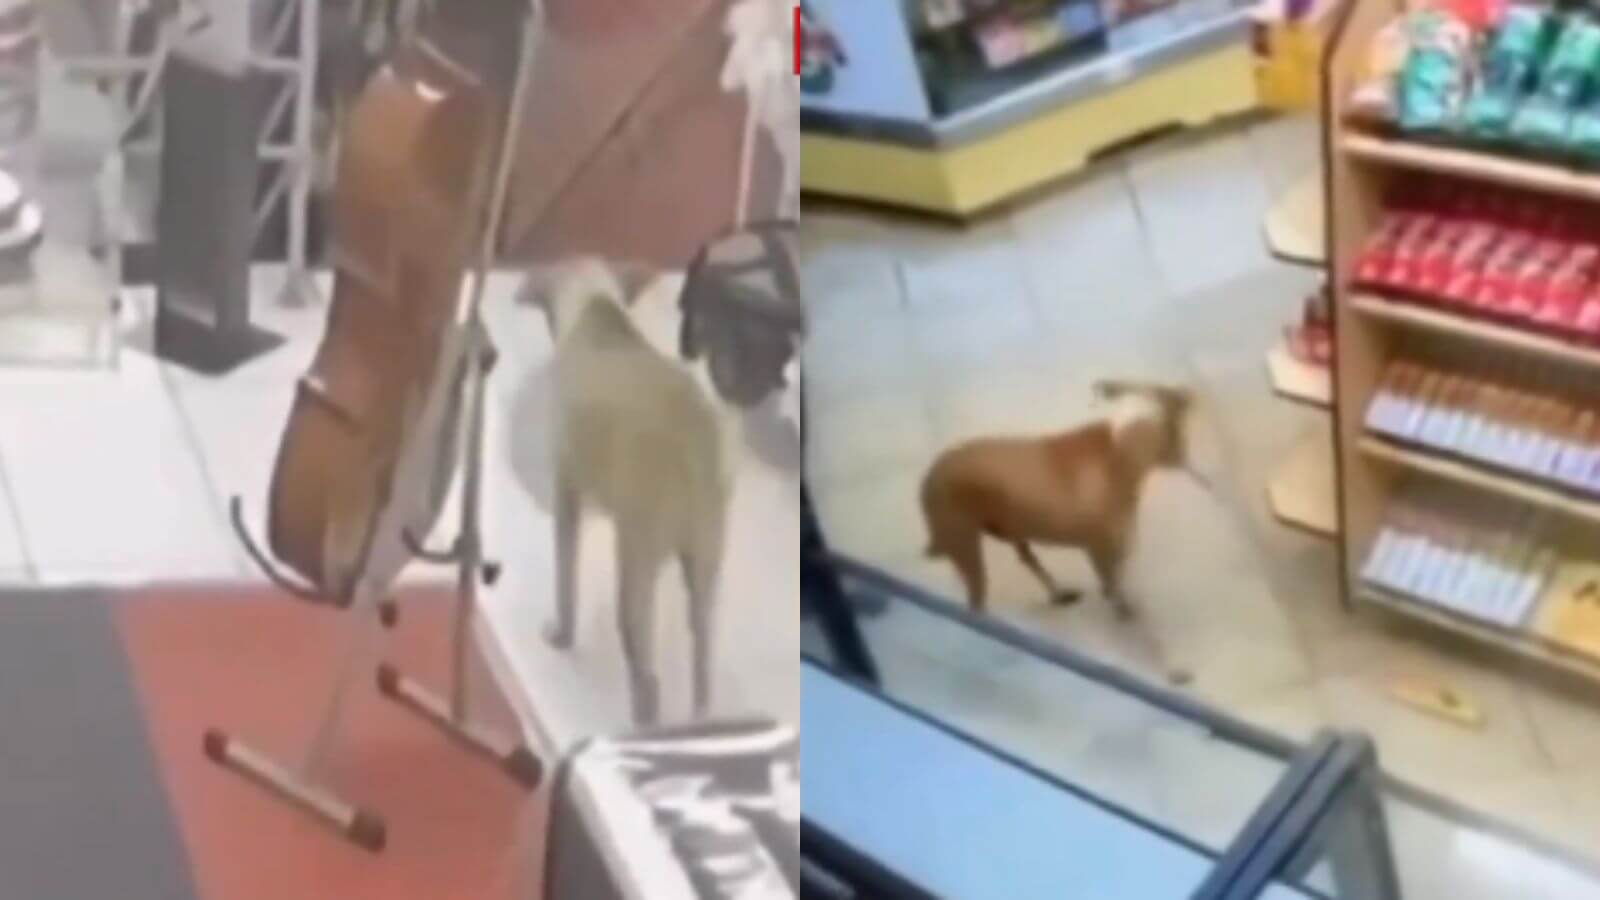 Cachorro caramelo 'rouba' três lojas em menos de 1 mês